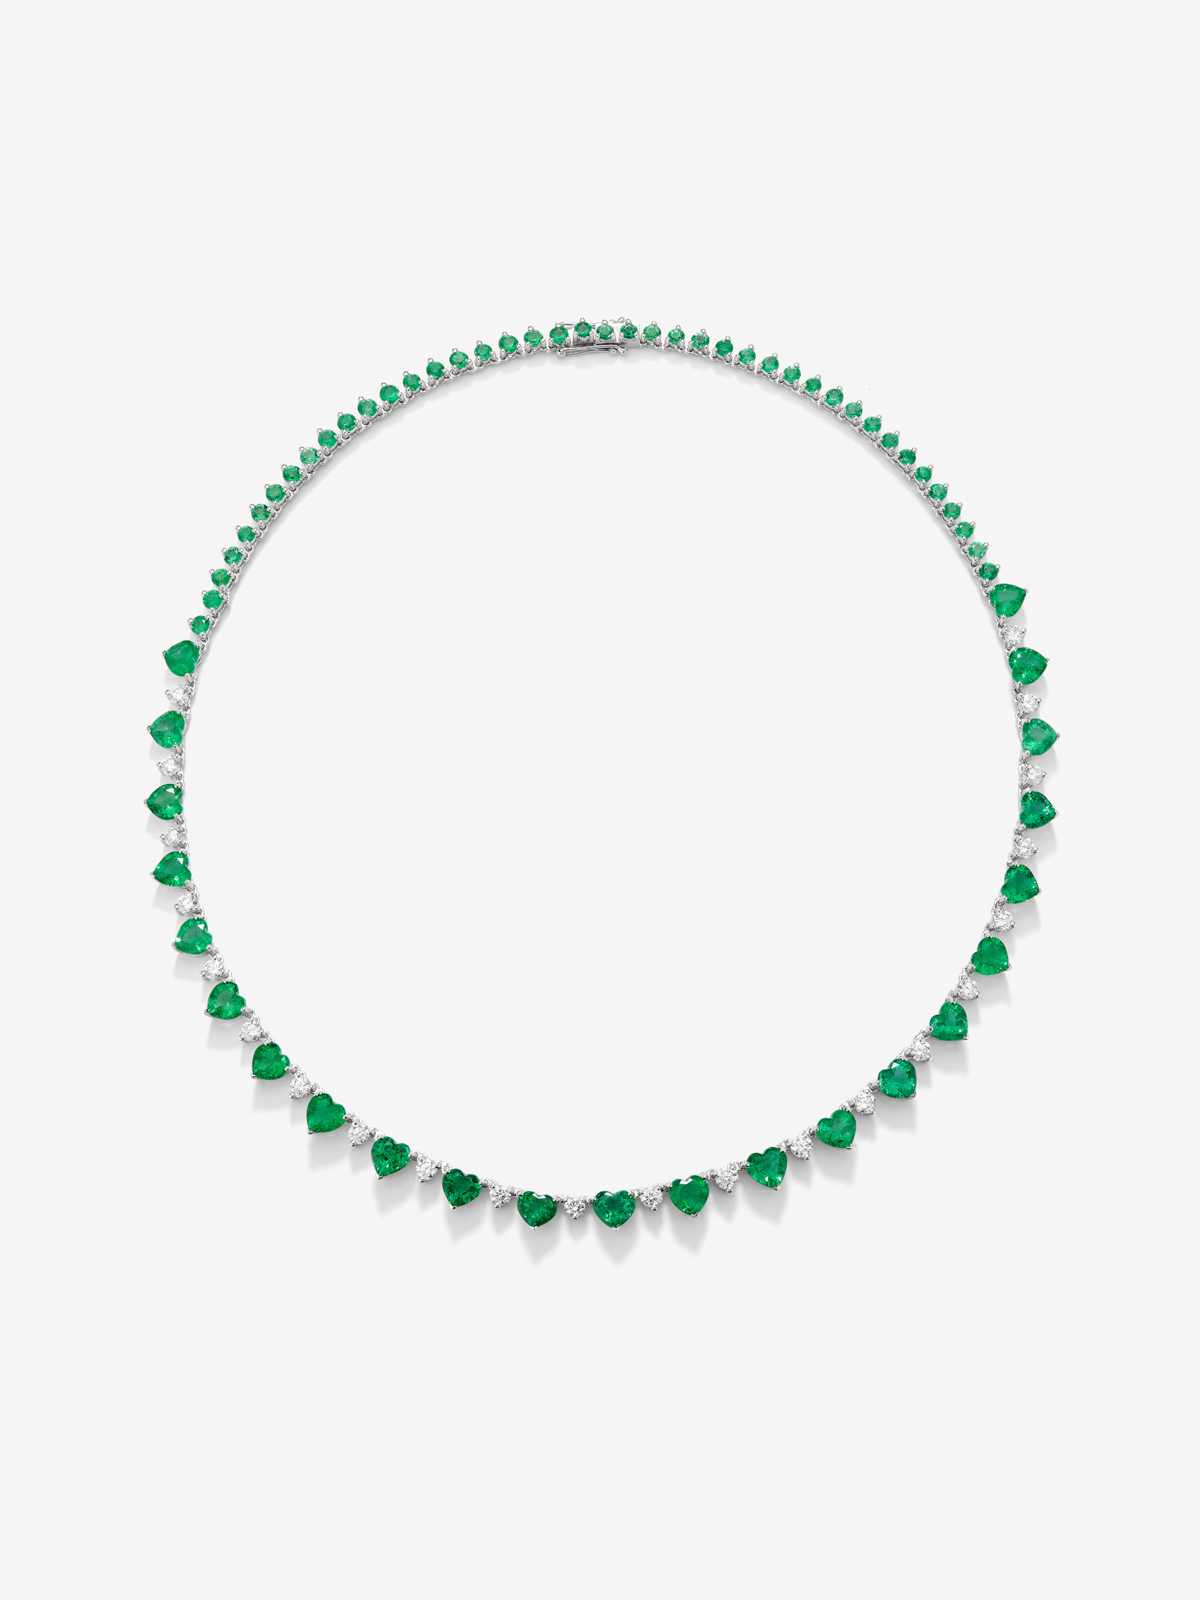 Collar de oro blanco de 18K con esmeraldas verdes en talla corazón y brillante de 20,47 cts y diamantes blancos en talla brillante de 2,84 cts